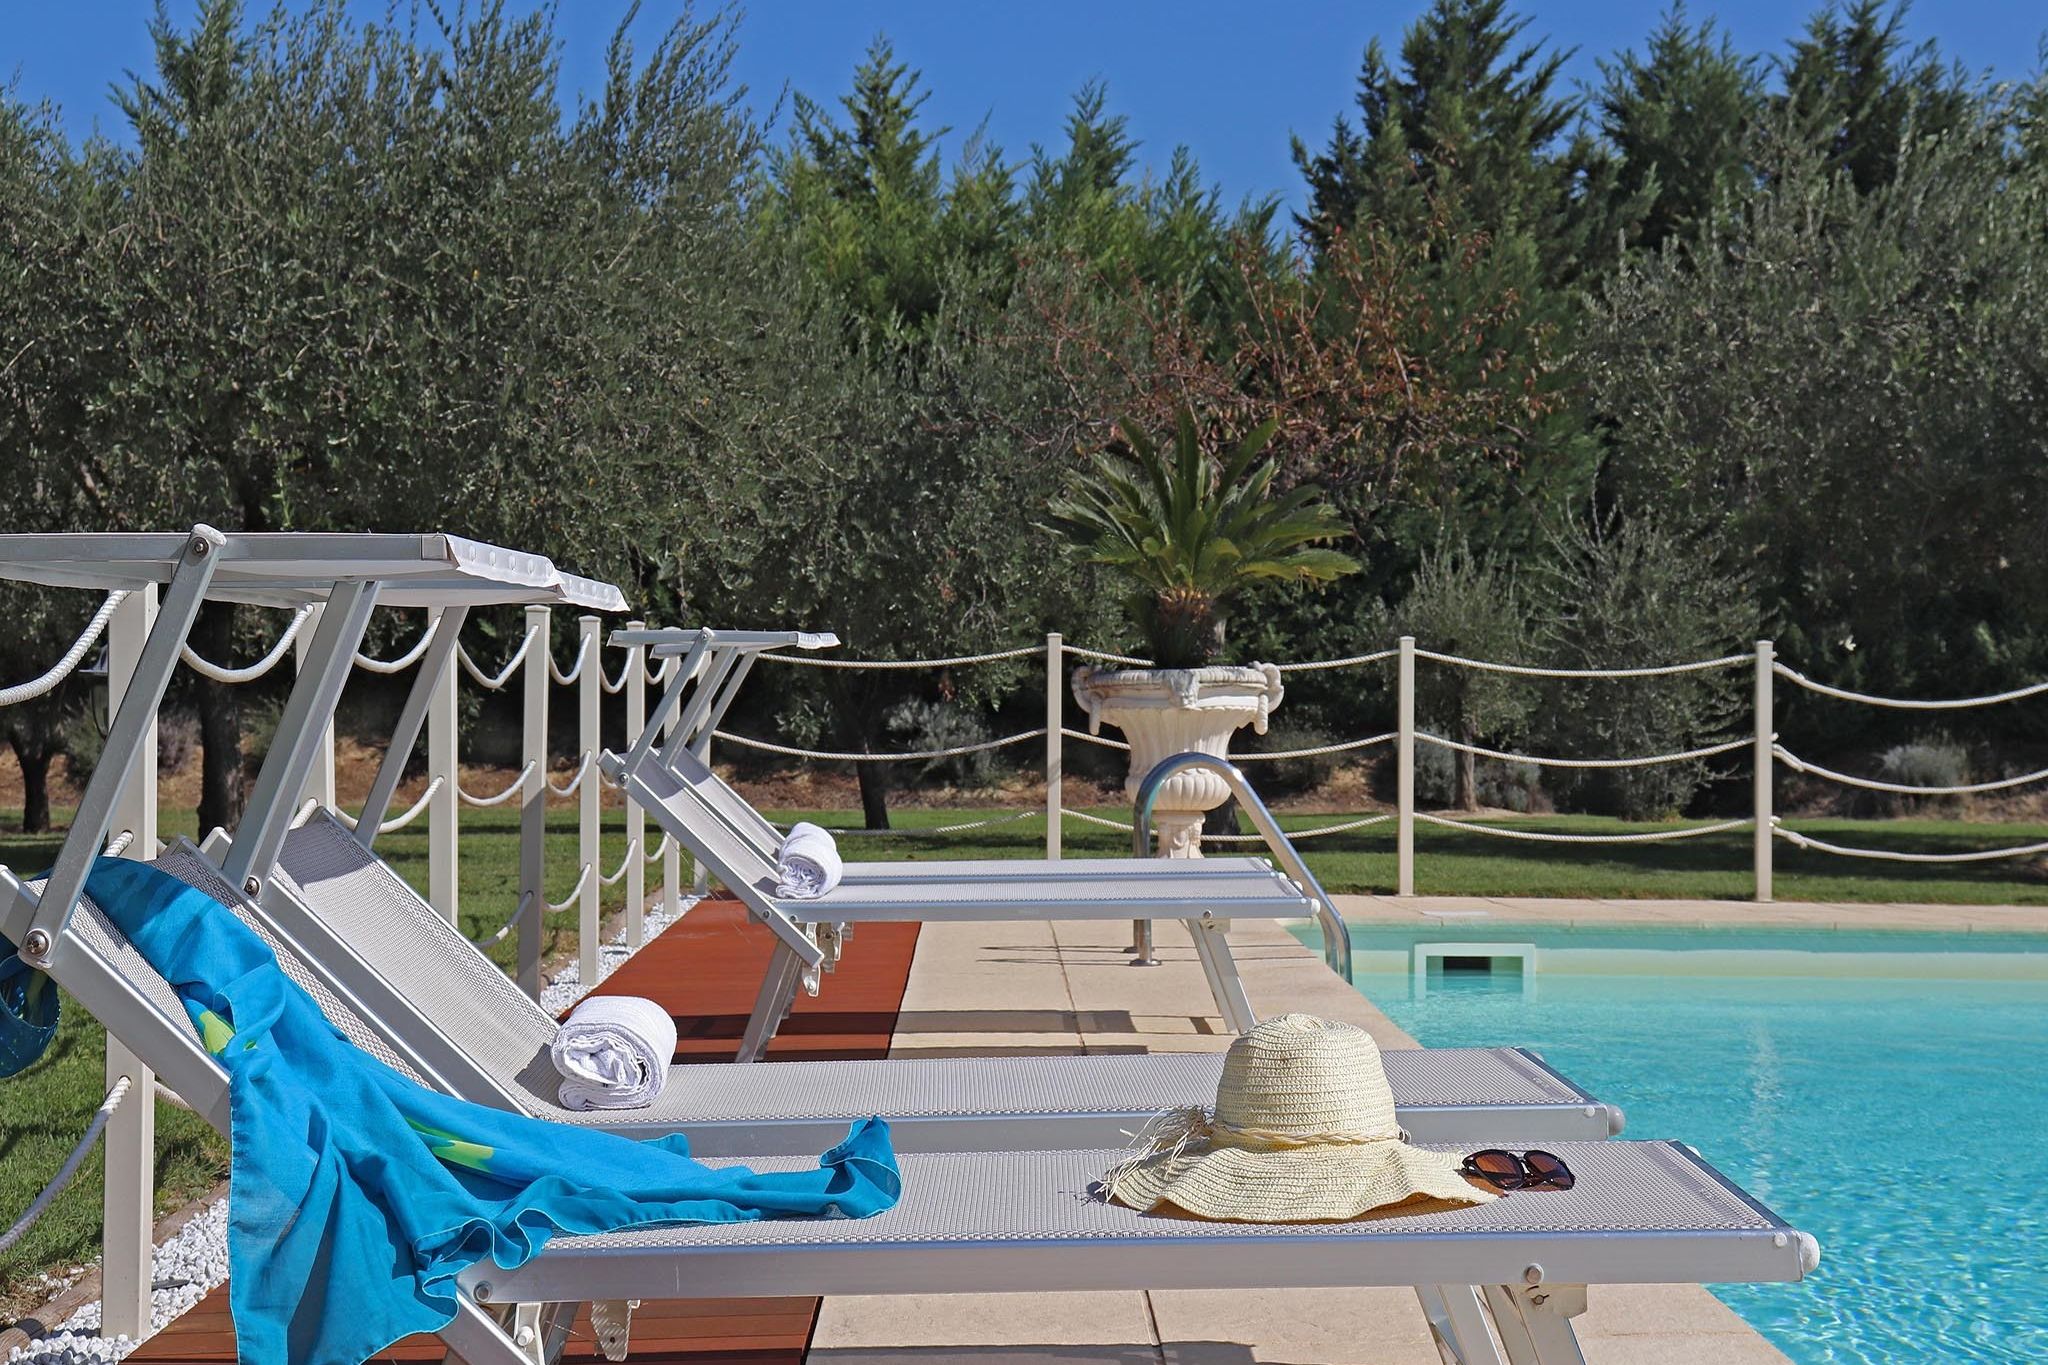 Romantisch ingerichte villa met privézwembad, 4 km van zee en badplaats Fano